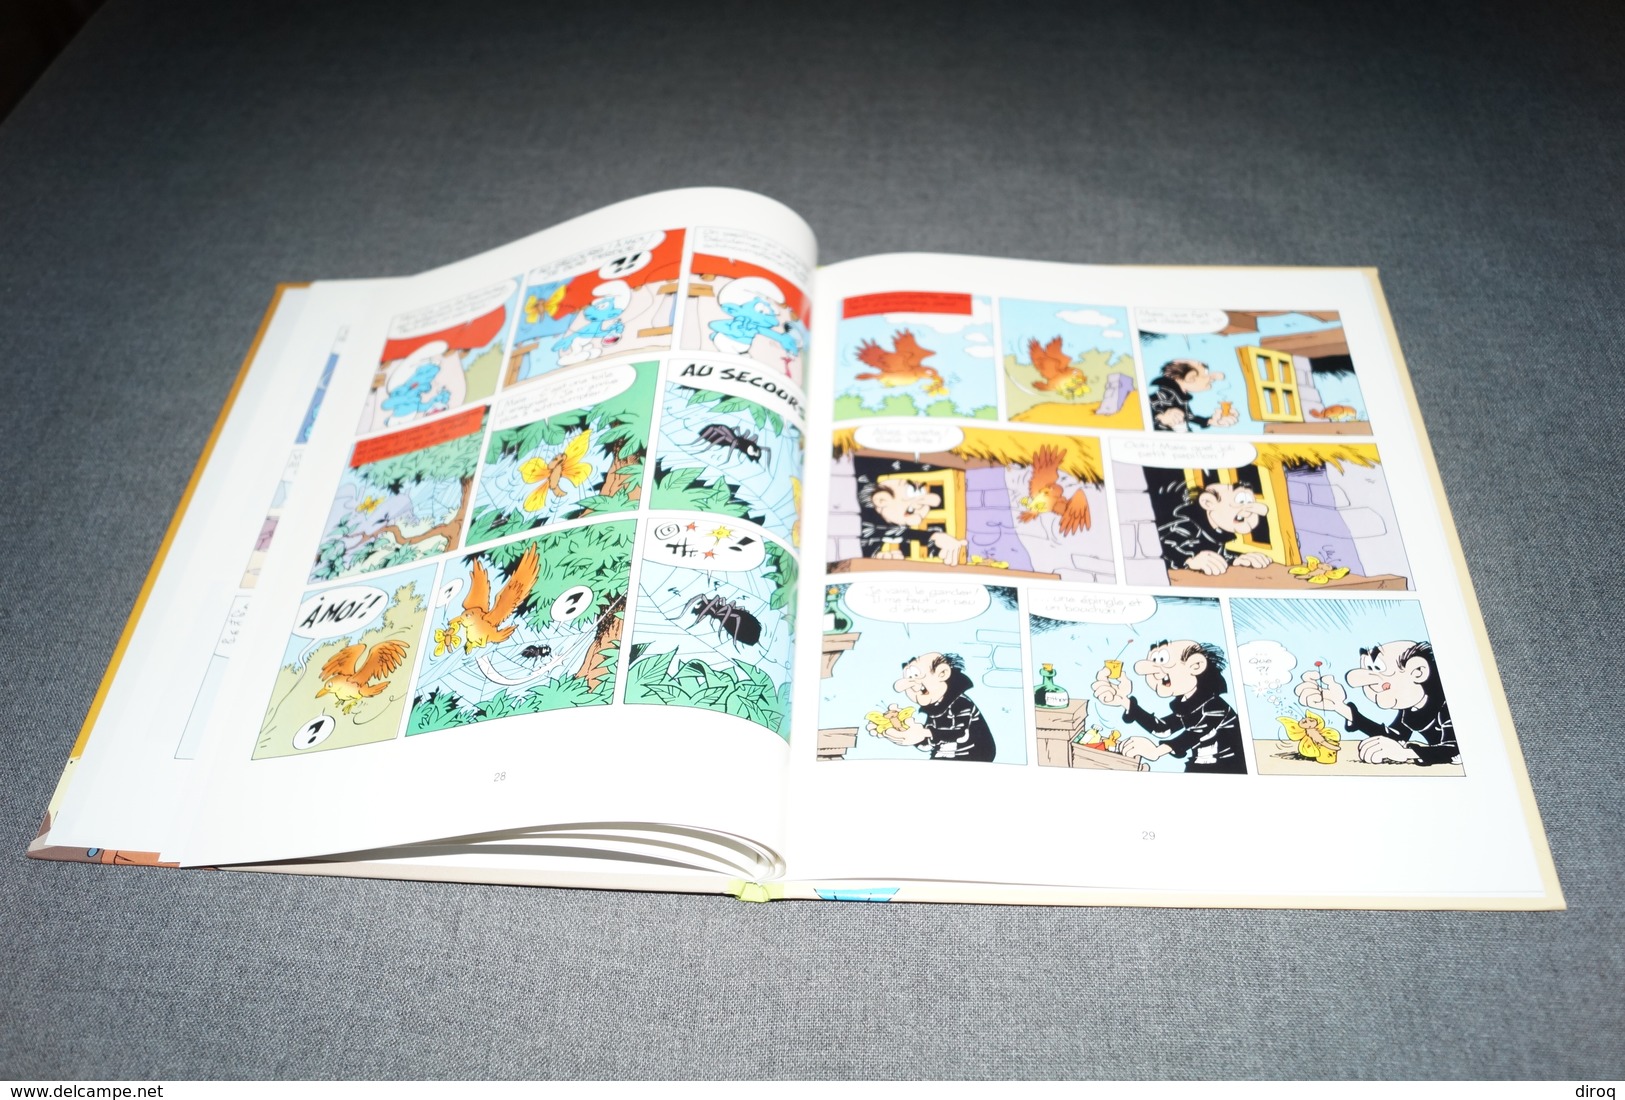 BD a l'état neuf,publicitaire ,Peyo,E.O.,les Schtroumpfosaures N° 12 ,3 histoires de Schtroumpfs,Original 1995